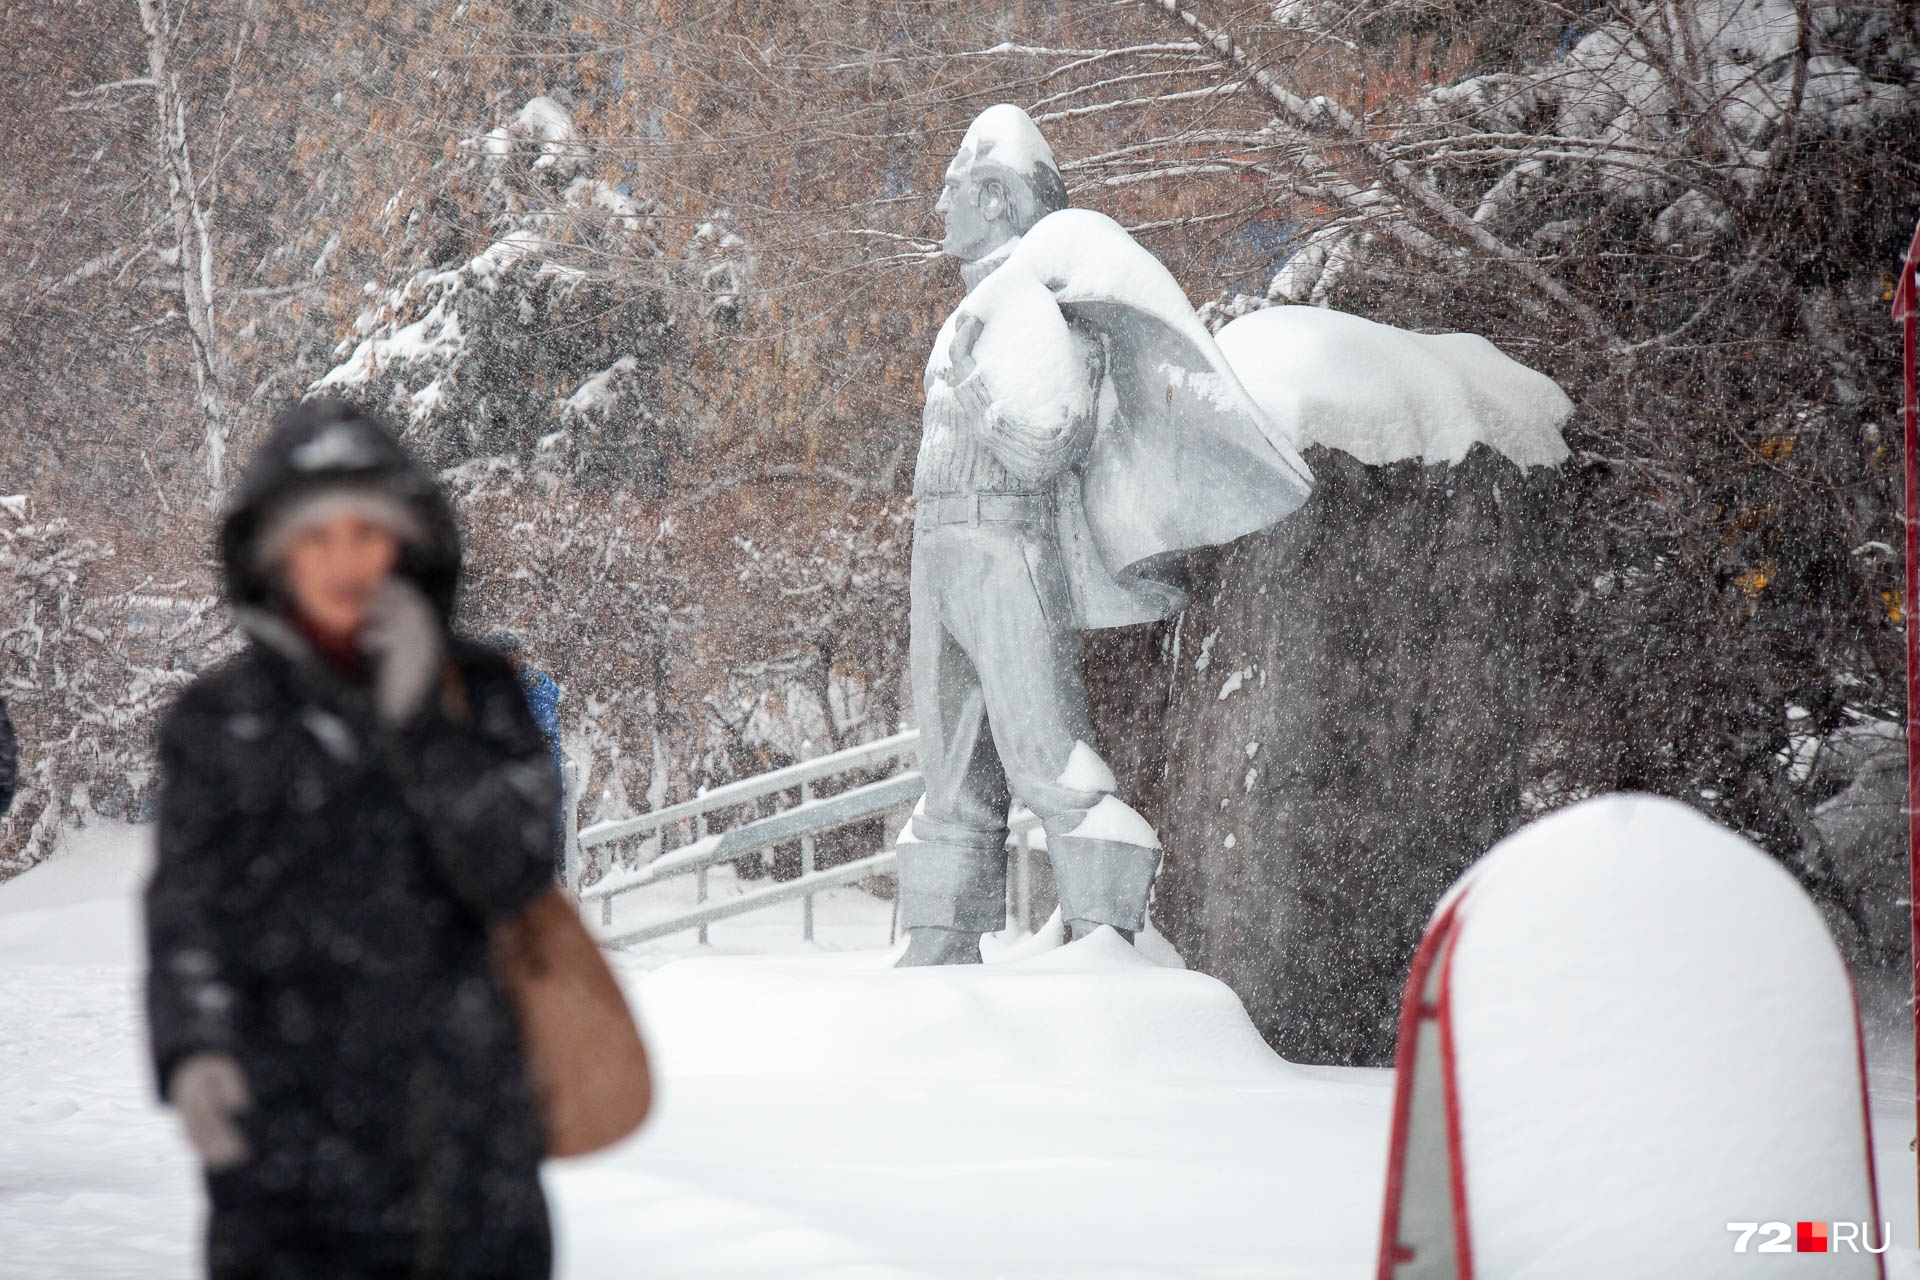 Памятник Раулю-Юрию Георгиевичу Эрвье занесло снегом. Известный советский геолог при жизни видал и не такие капризы стихий, когда искал нефть и газ. Его не напугать